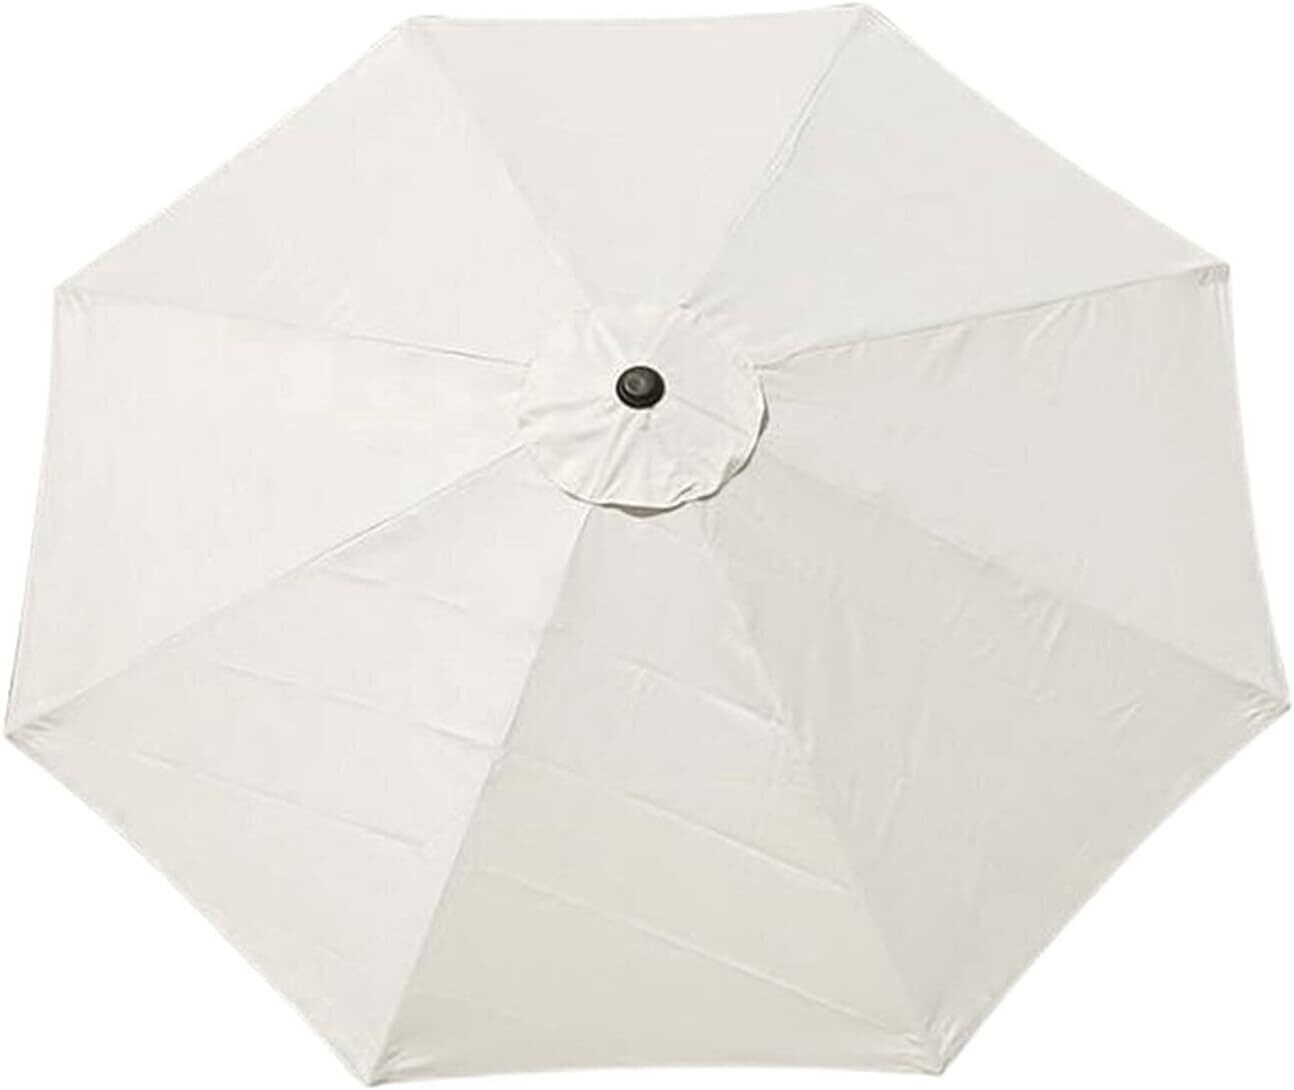 Replacement Canopy Cloth for Garden Parasol Umbrella (3 metre)